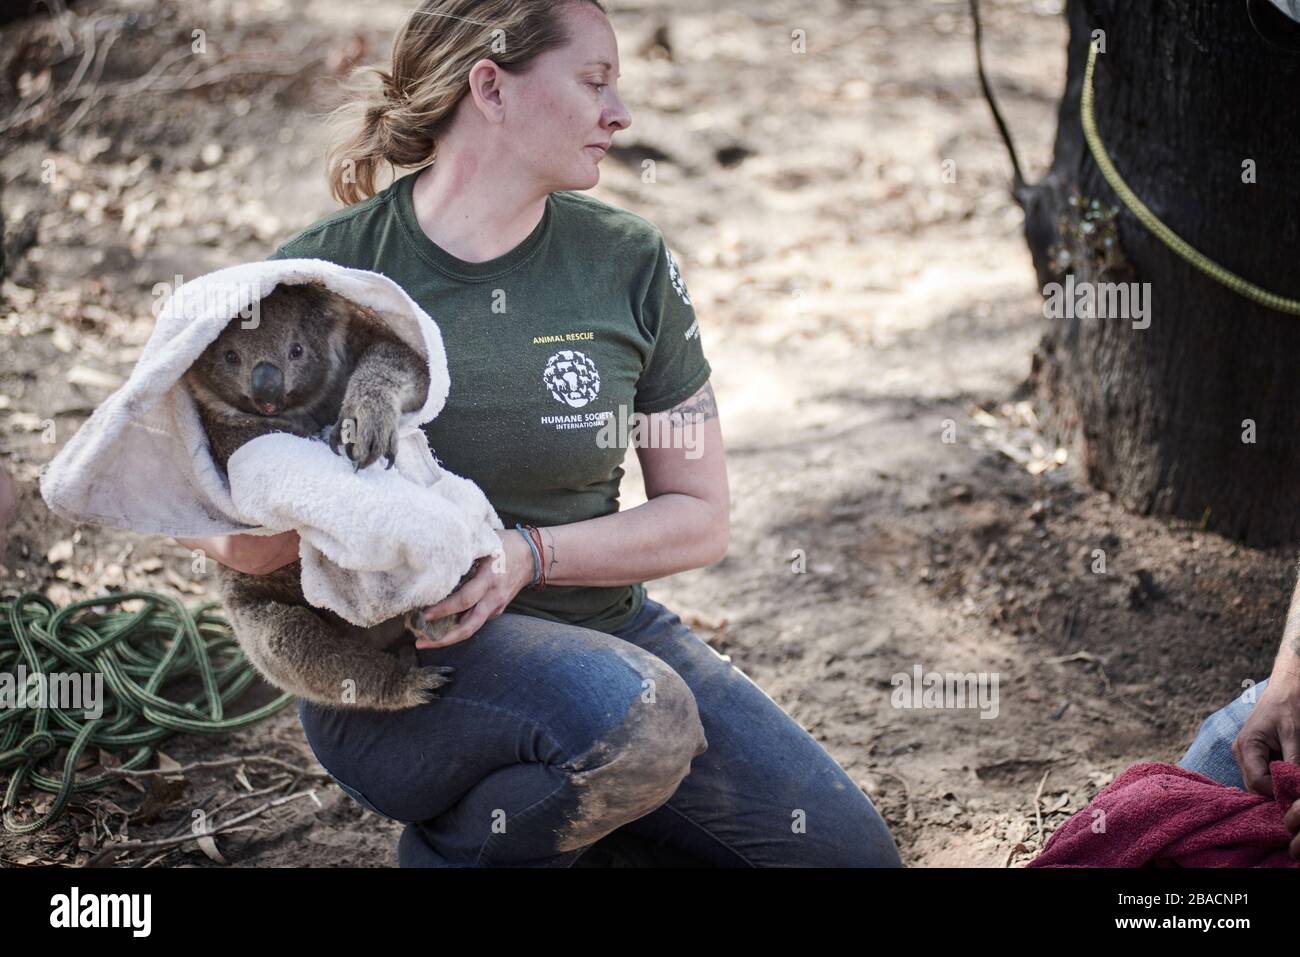 Un koala sauvé par Kelly Donithan de la Humane Society International d'un arbre sur l'île Kangaroo, Australie méridionale, Australie. Banque D'Images